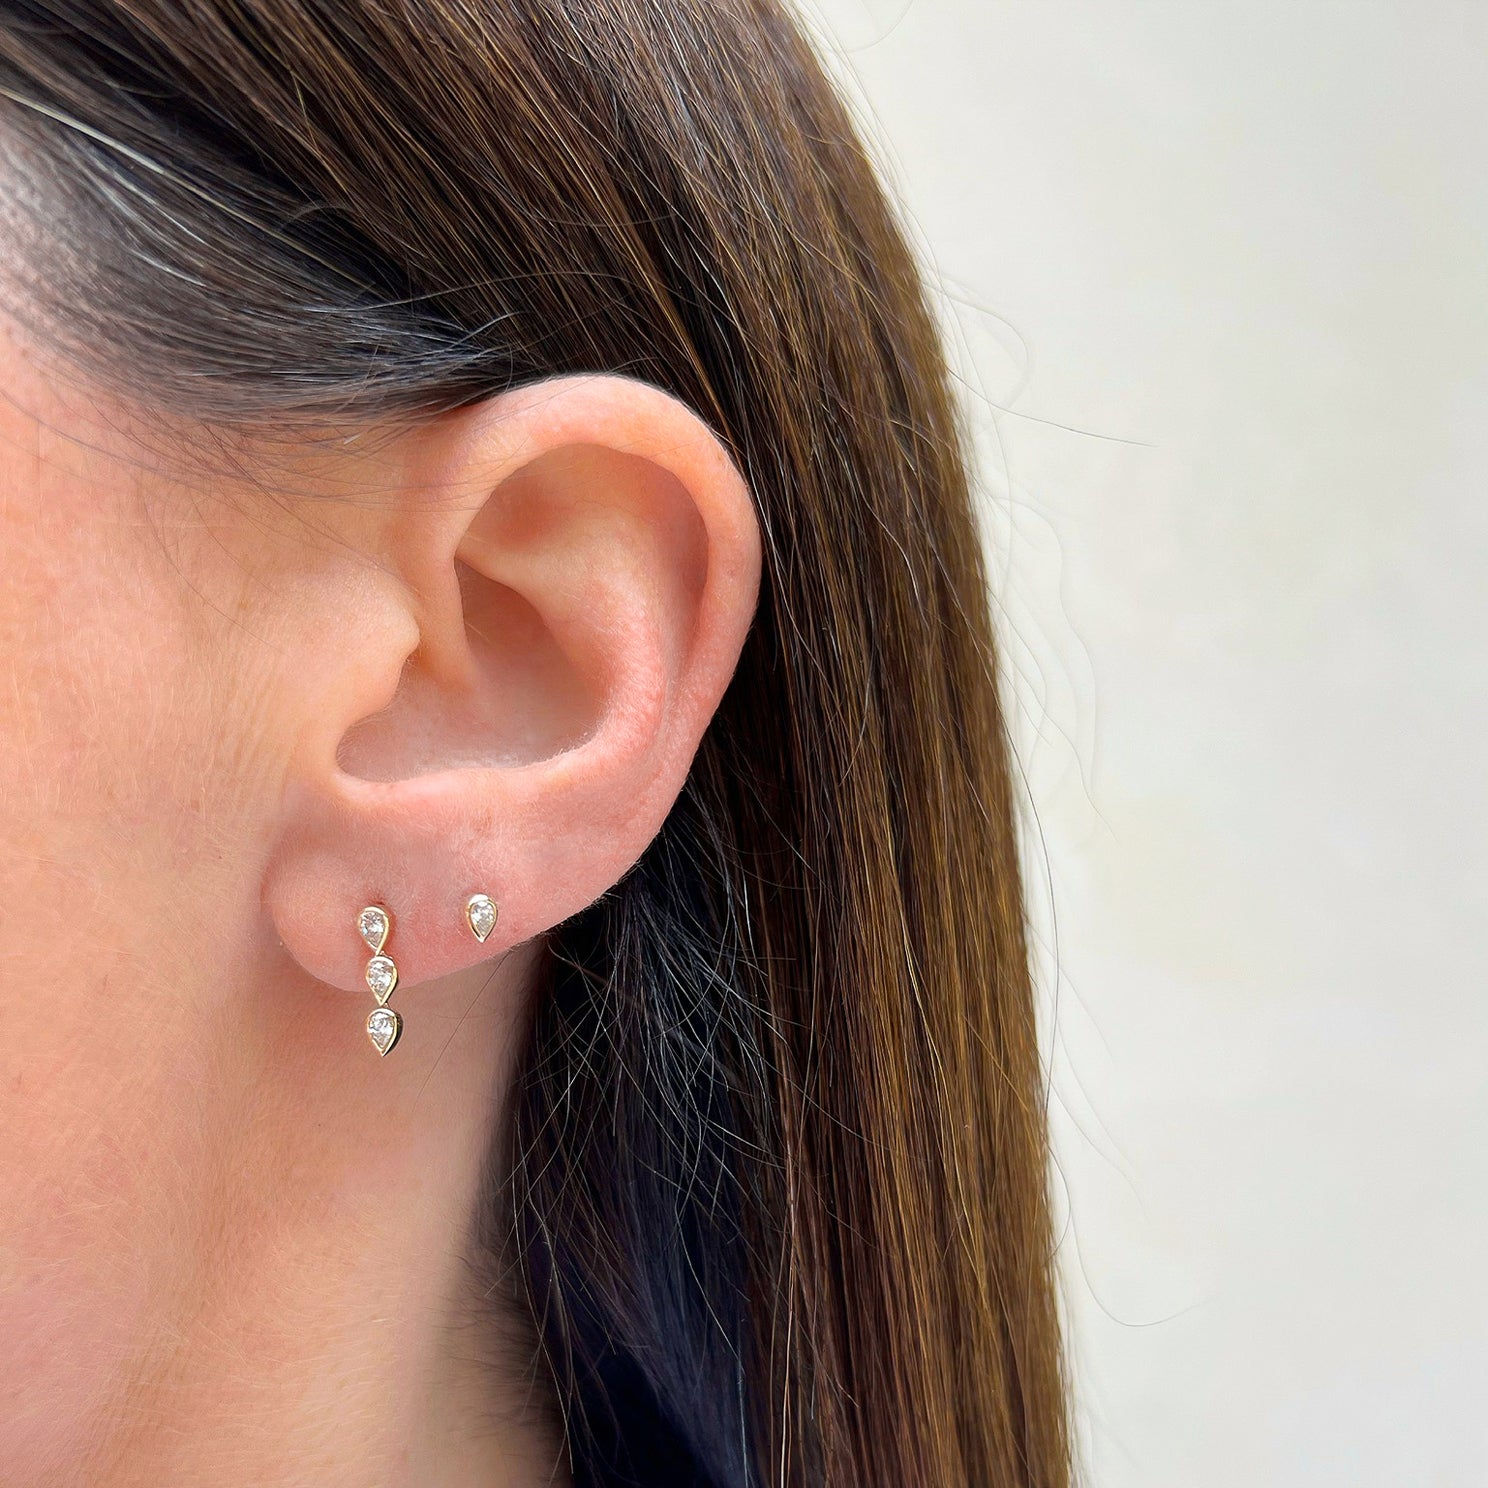 2nd Hole Earring, Single Stud Earring, 14Kt Gold 0.10 Ct Diamond Earring,  Real Diamond Earring, Gold Diamond Earring, Diamond Stud